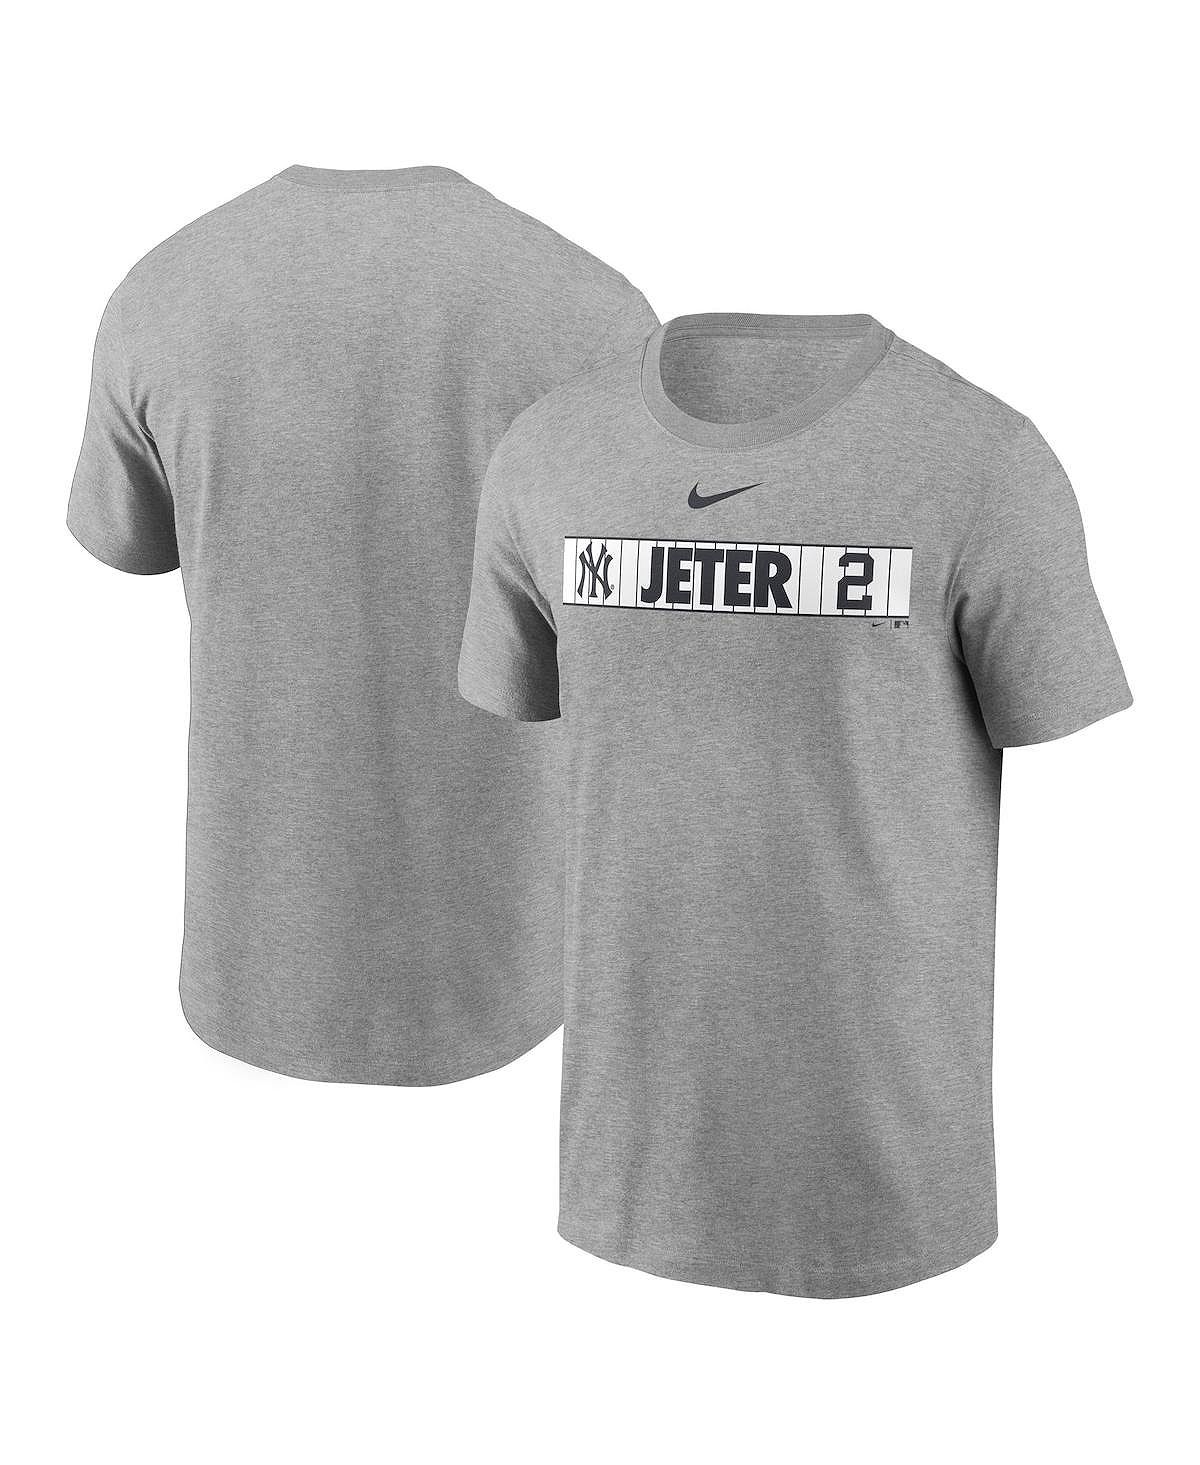 Мужская футболка derek jeter heathered grey new york yankees в раздевалке Nike, мульти